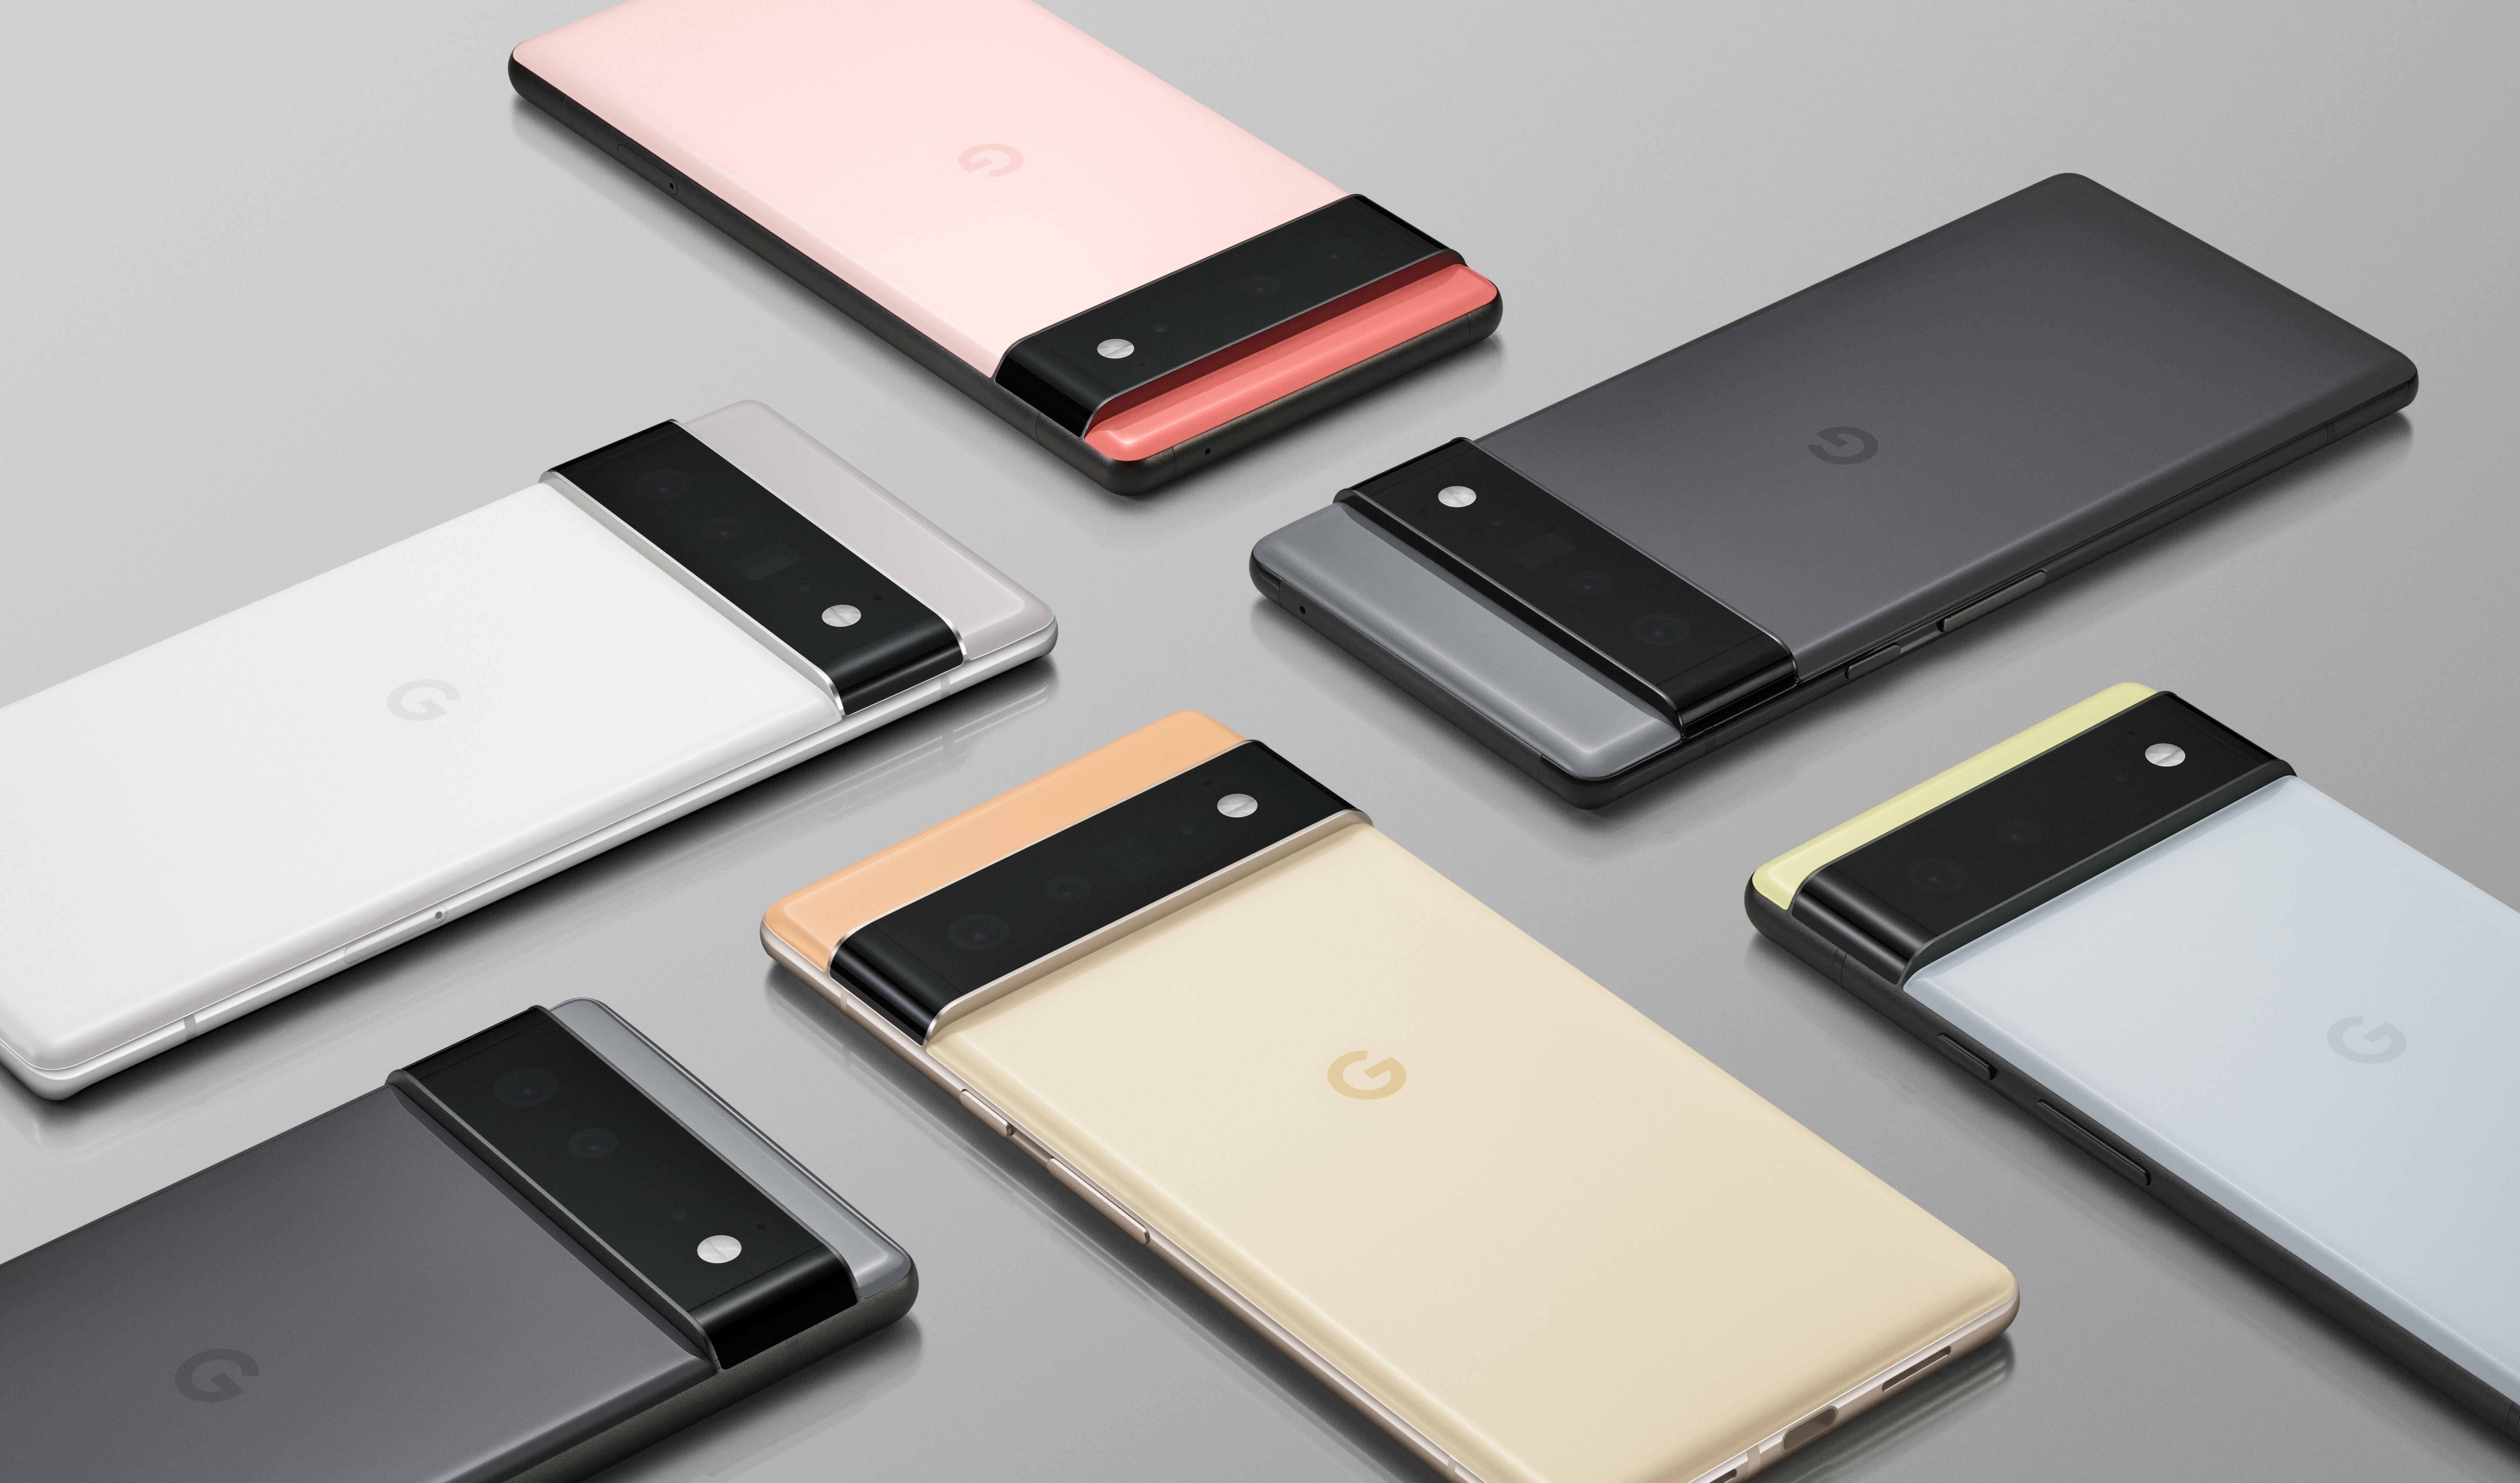 Los nuevos smartphones de Google, Pixel 6 y pixel 6 Pro, prometen lo último en inteligencia artificial